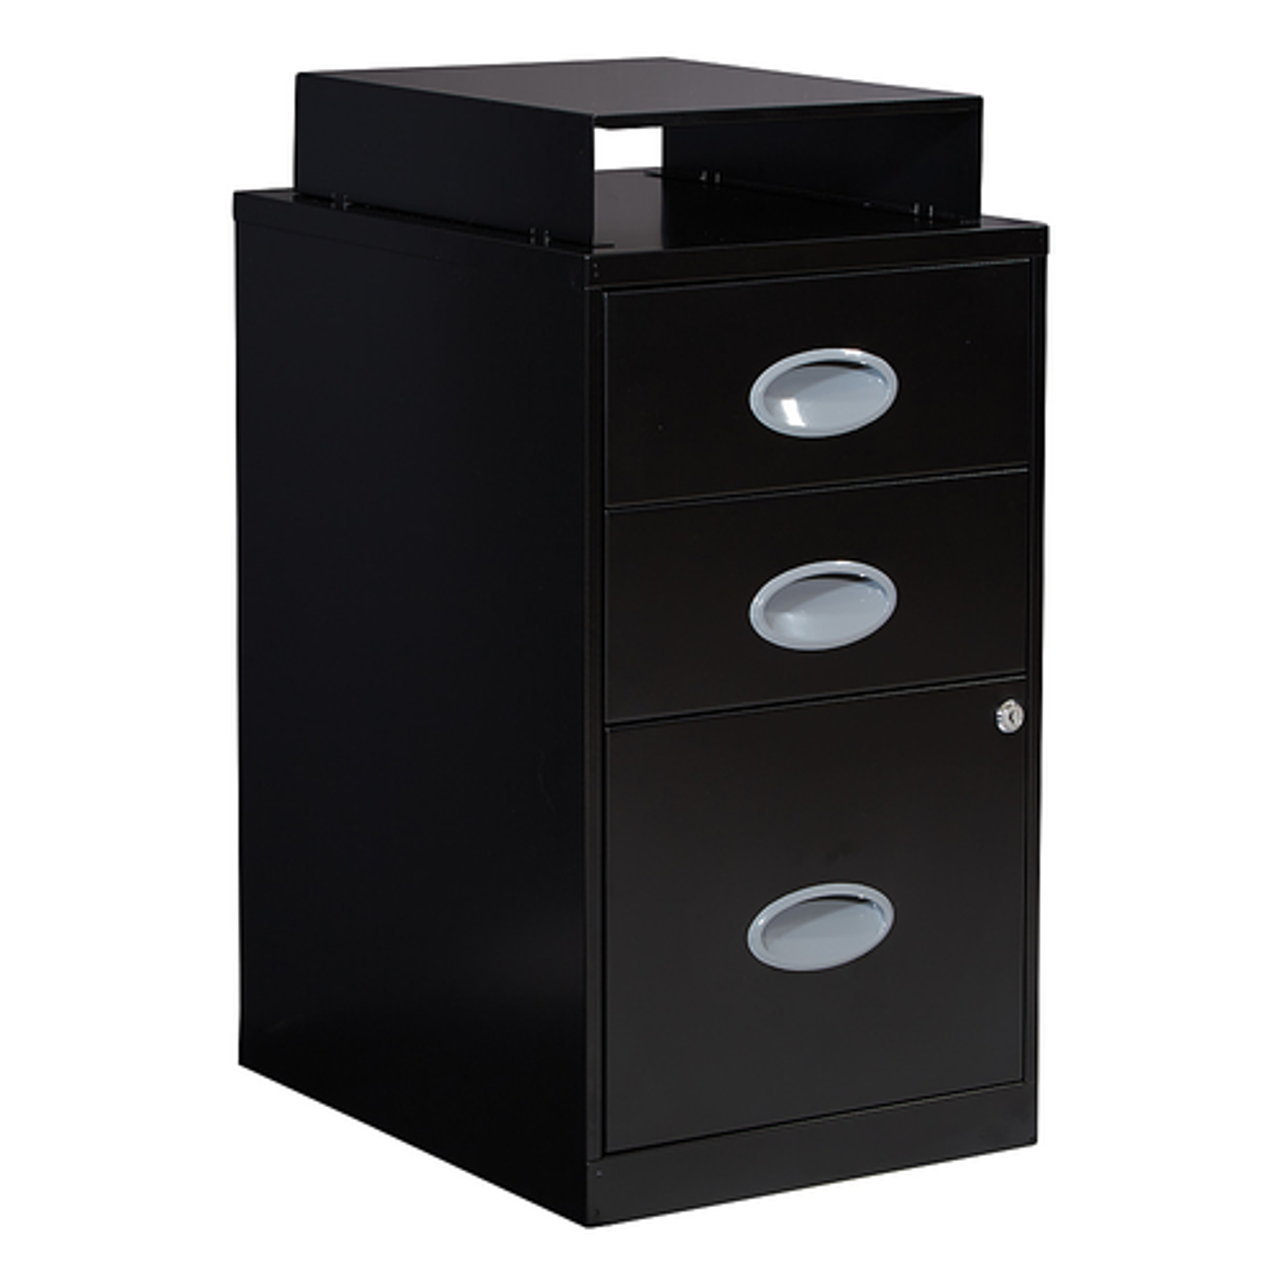 OSP Home Furnishings - 3 Drawer Locking Metal File Cabinet Top Shelf - Black